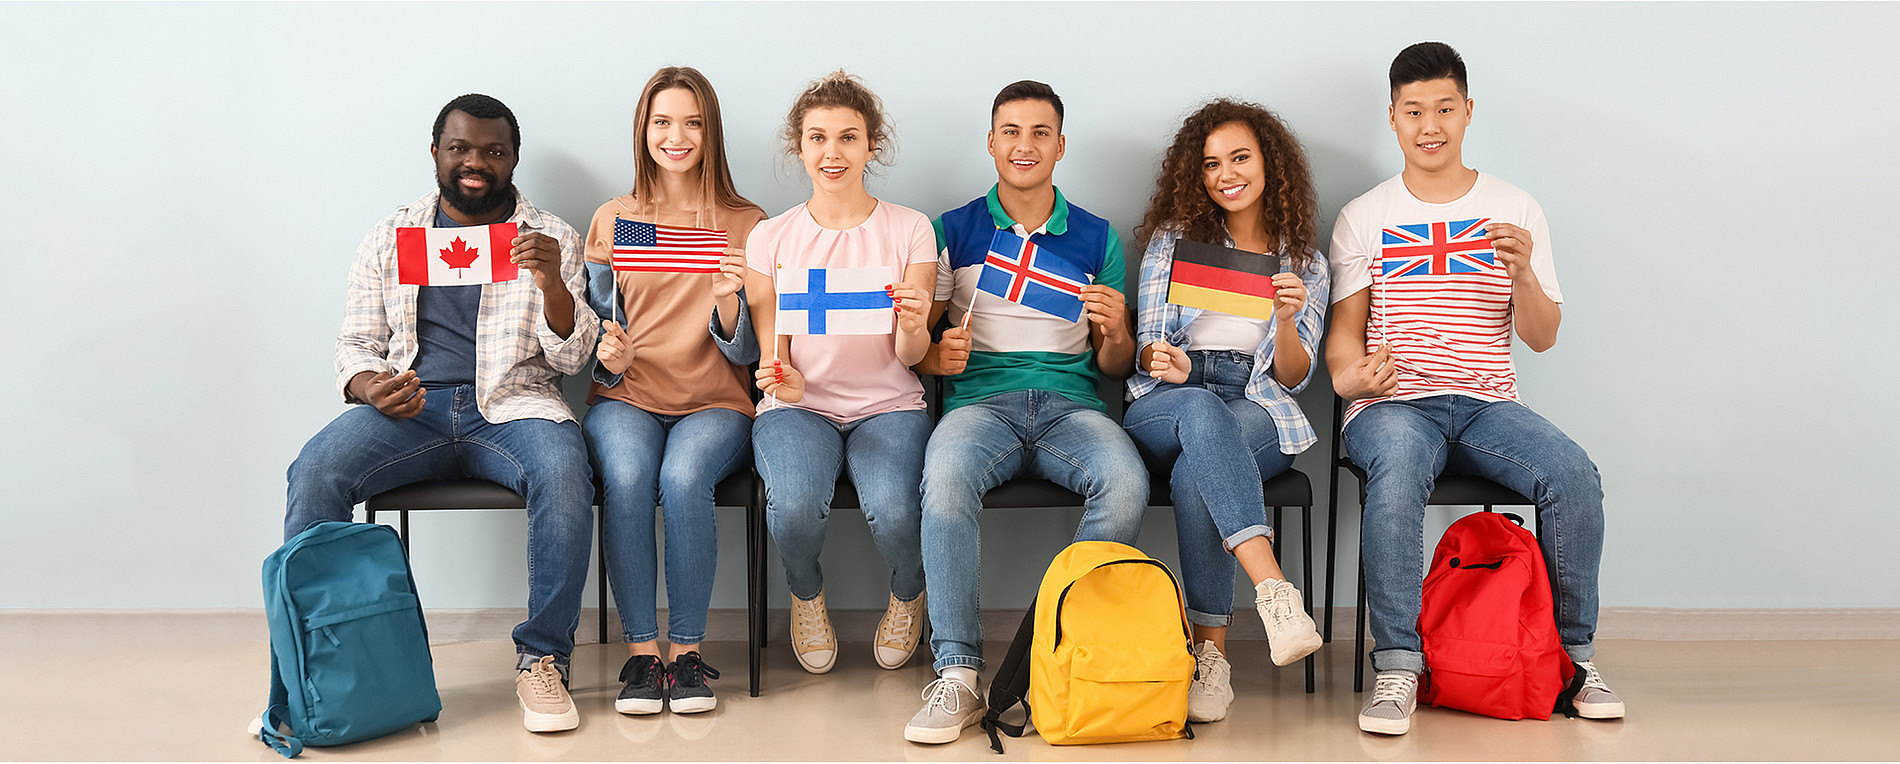 Sprachkurse: Menschen sitzen neben einander mit unterschiedlichen Flaggen (Foto: Adobe Stock) 